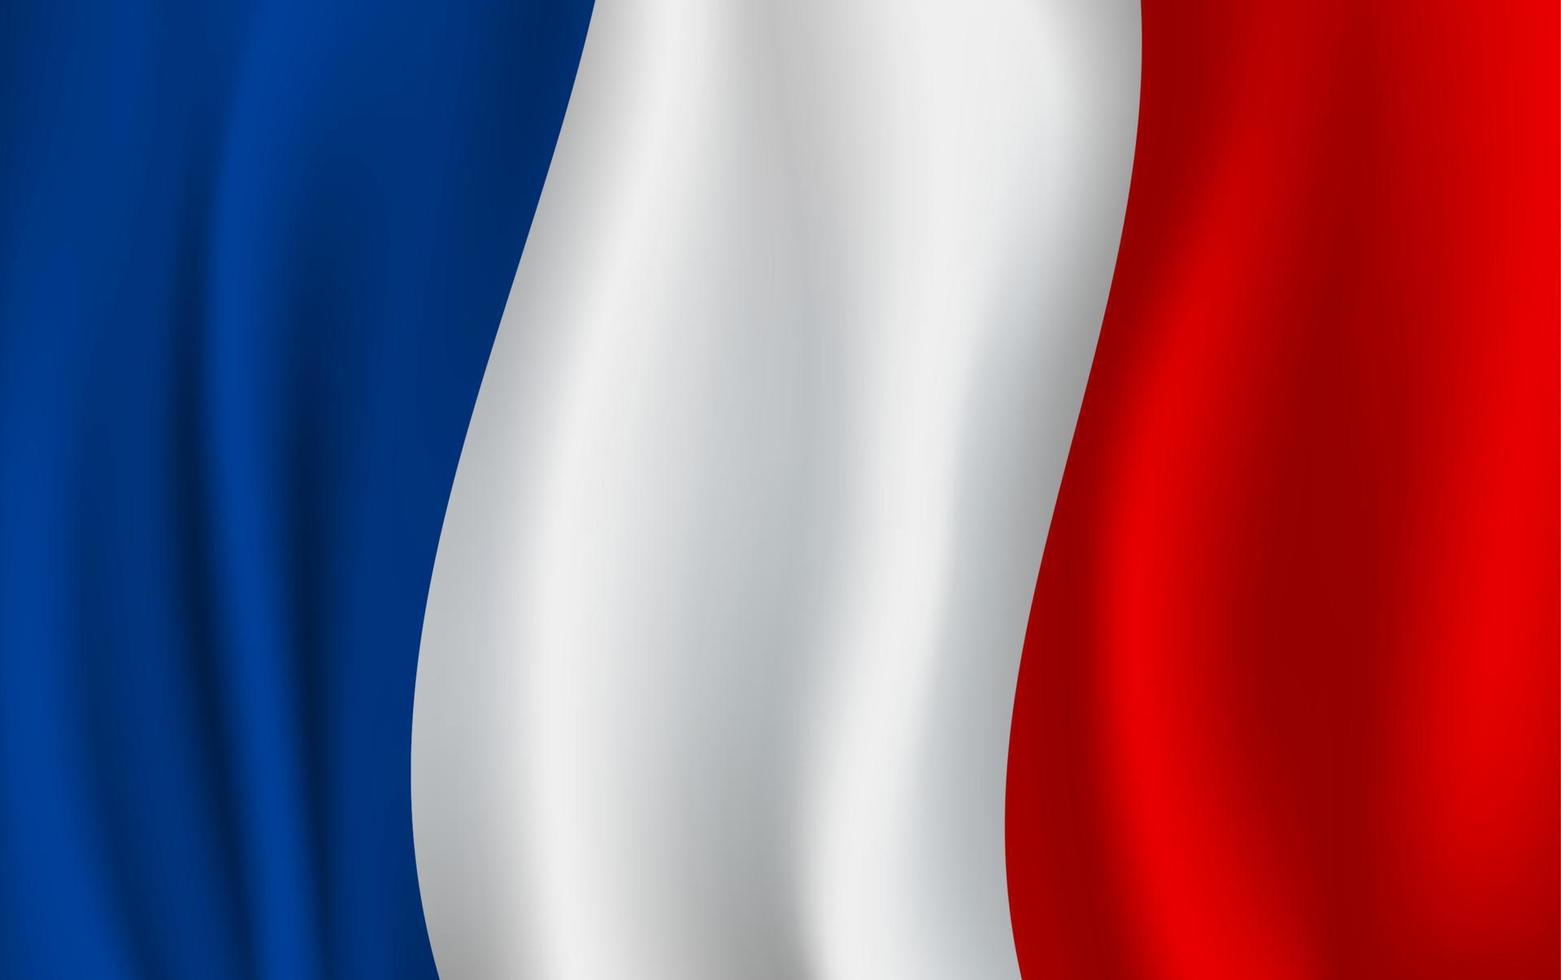 bandeira de vetor da frança. símbolo nacional francês